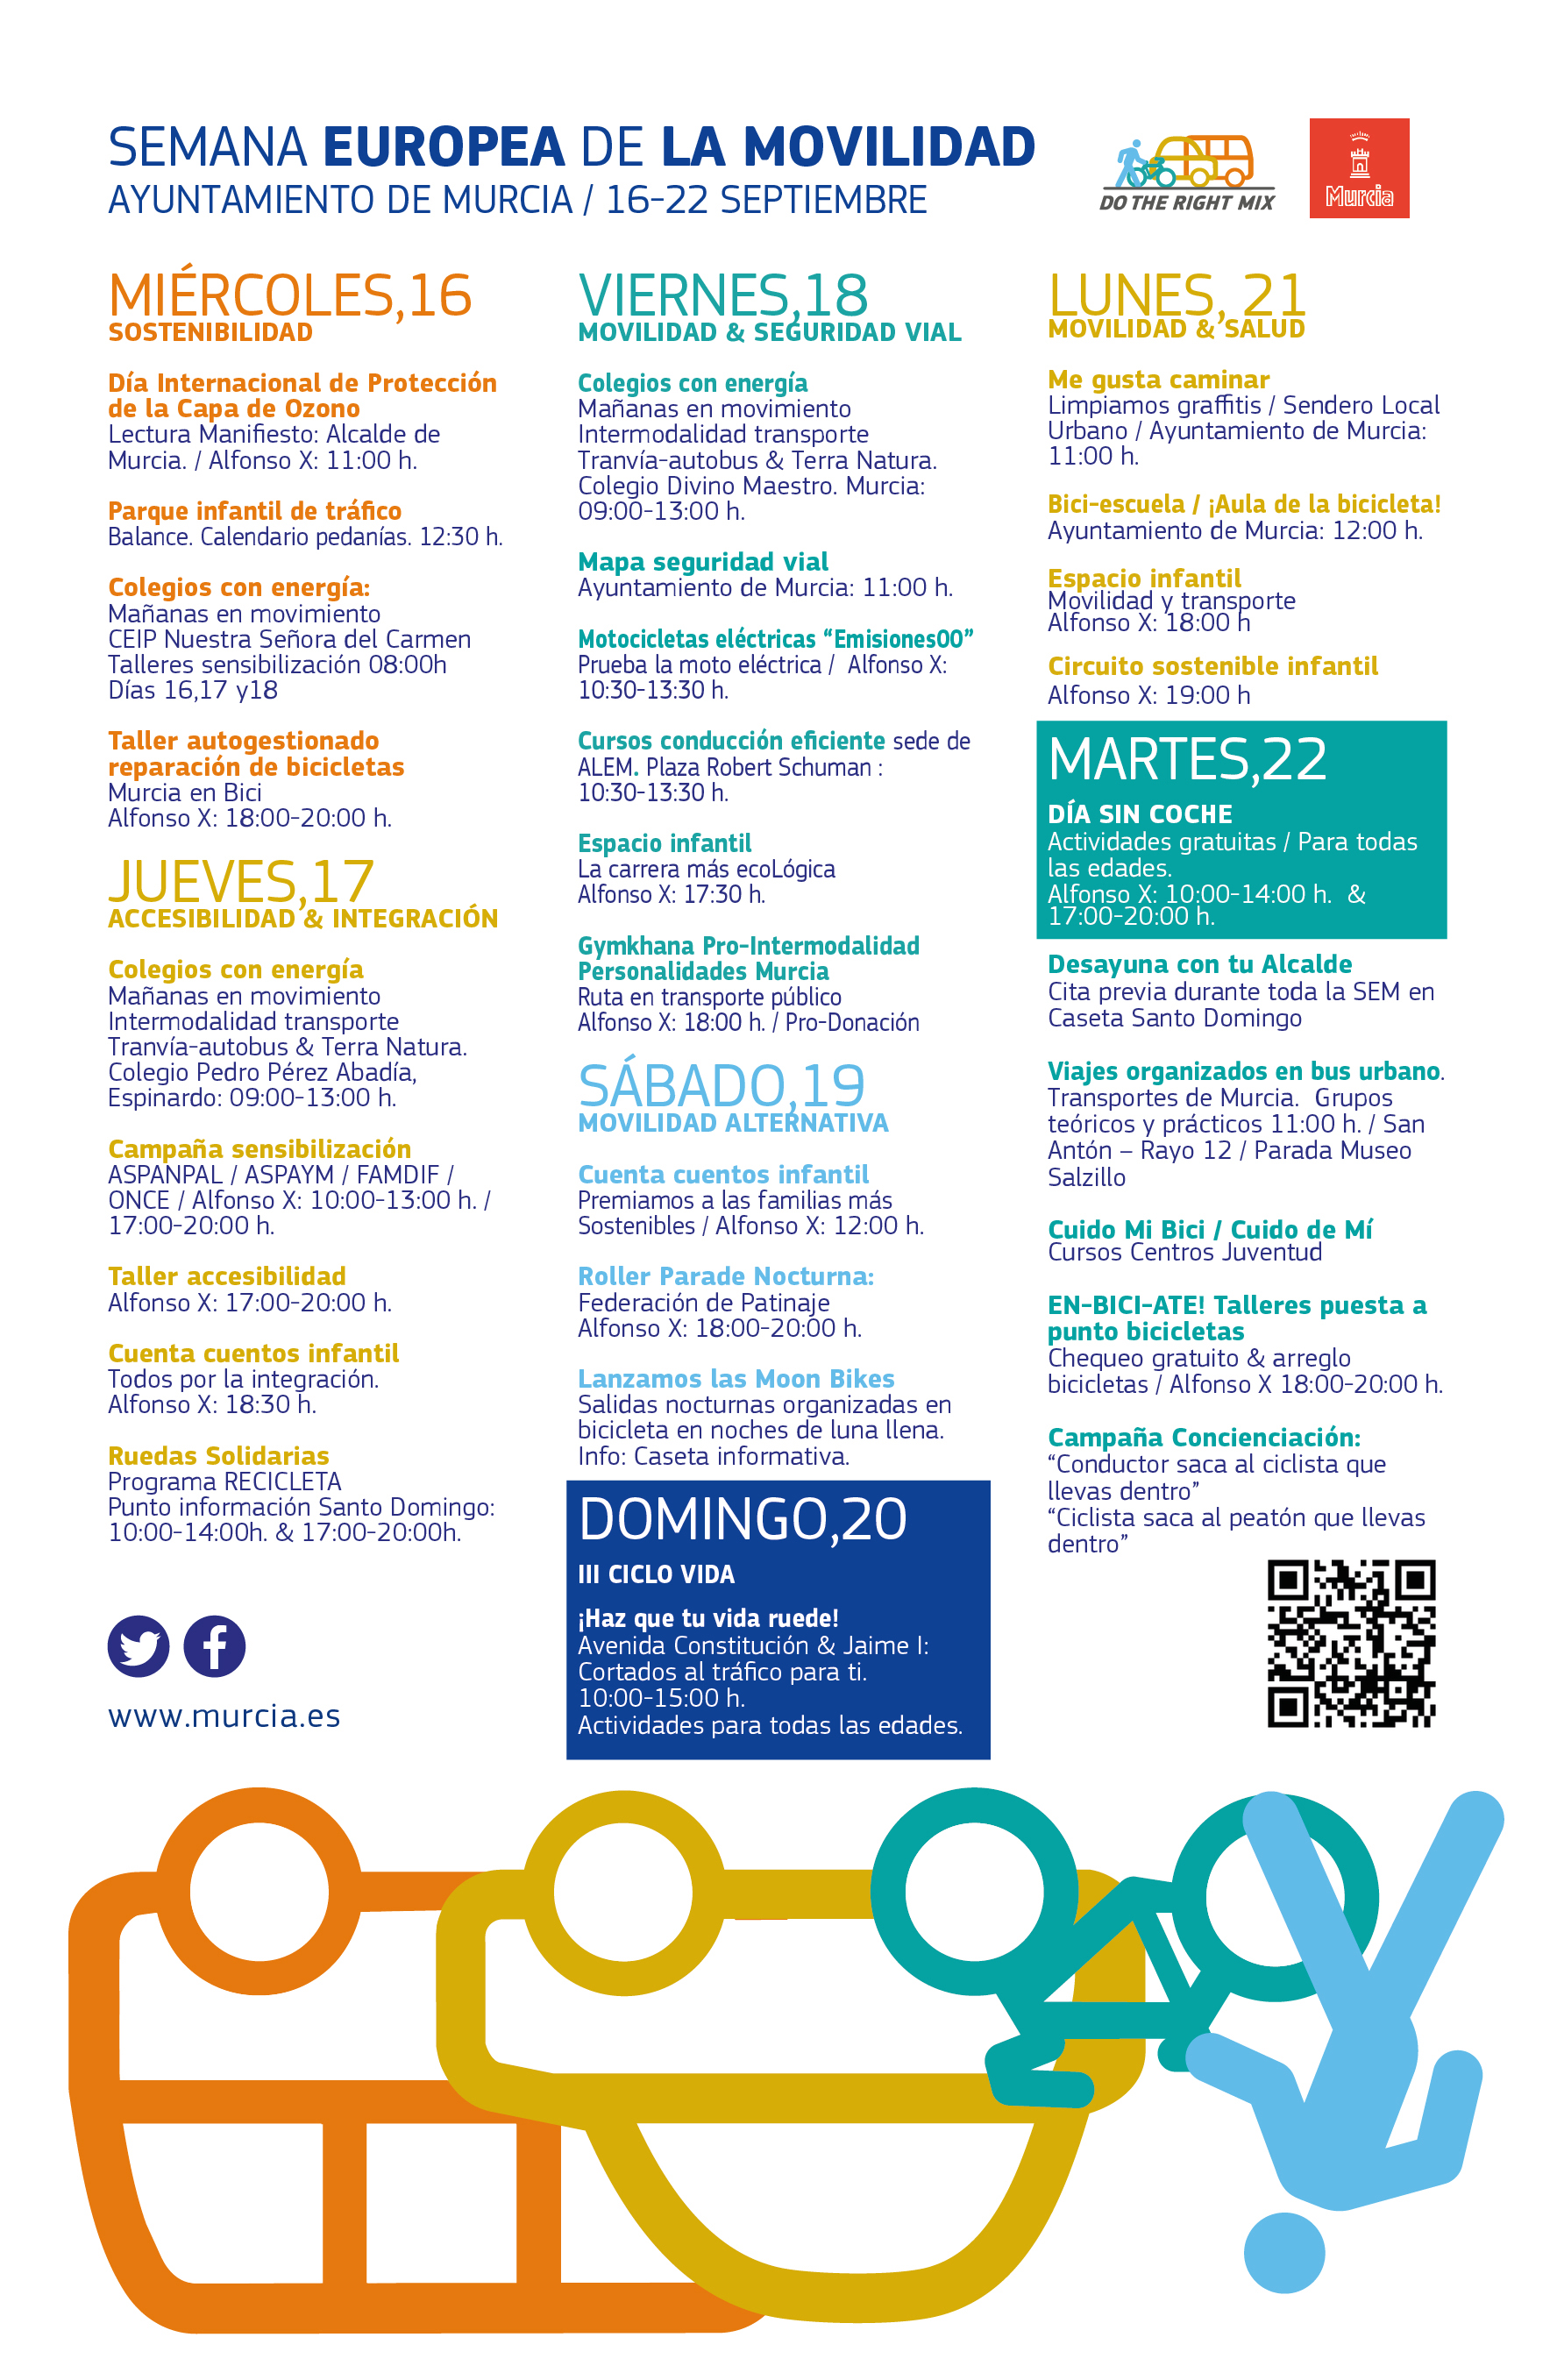 Semana Europea de la Movilidad del Ayto. de Murcia. Programa